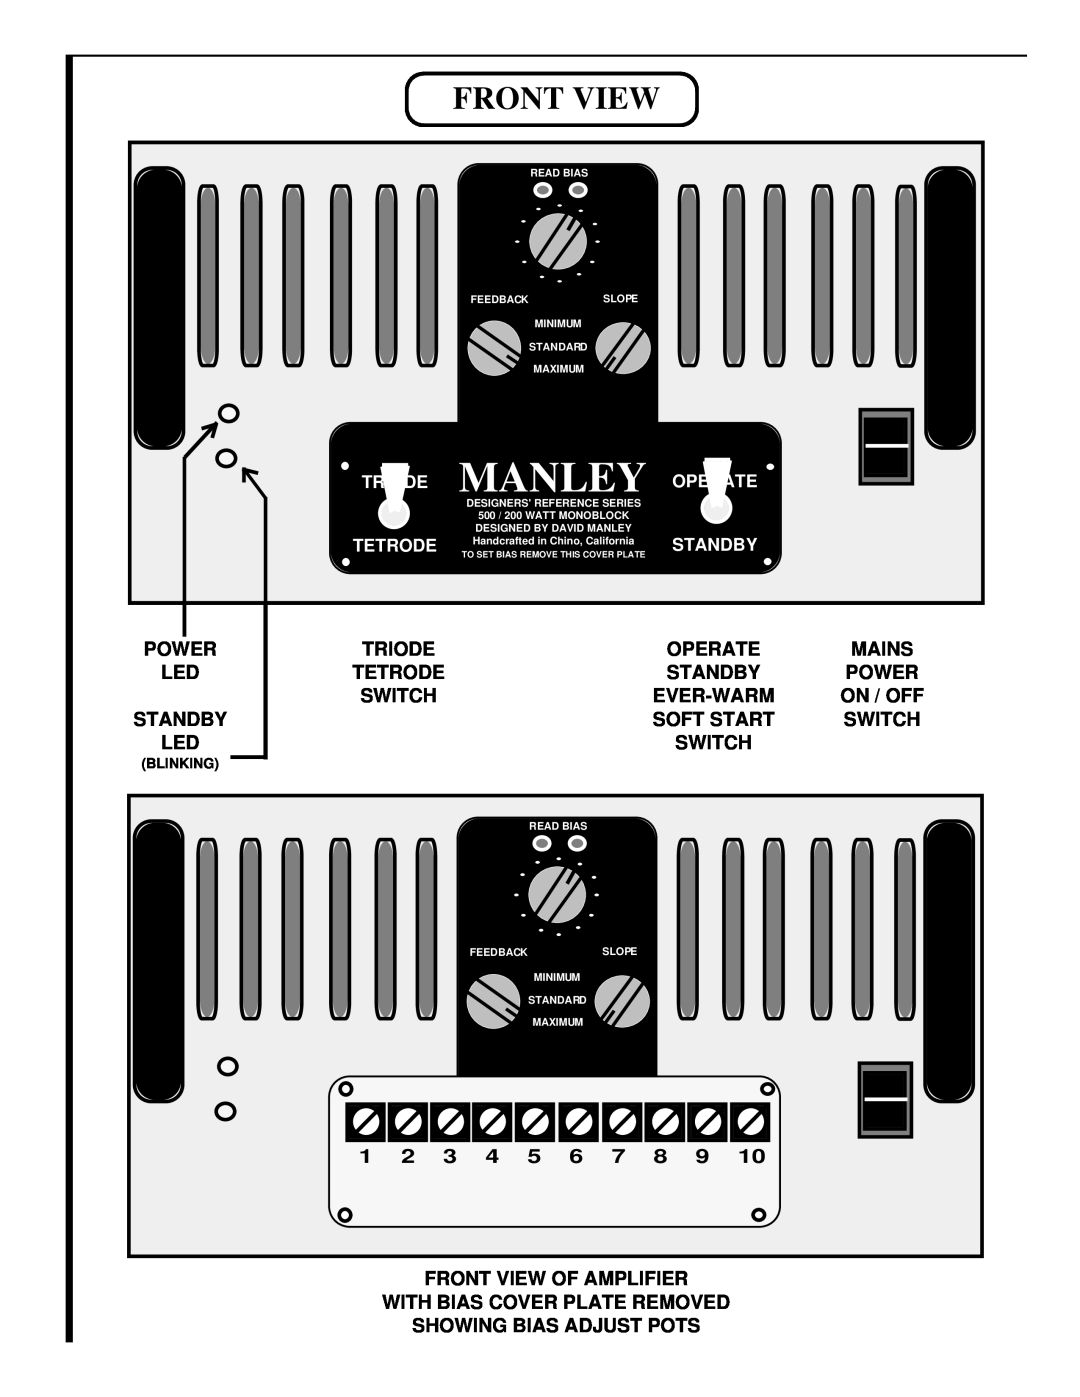 Manley Labs 500 / 200 WATT MONOBLOCK AMPLIFIER owner manual Front View 